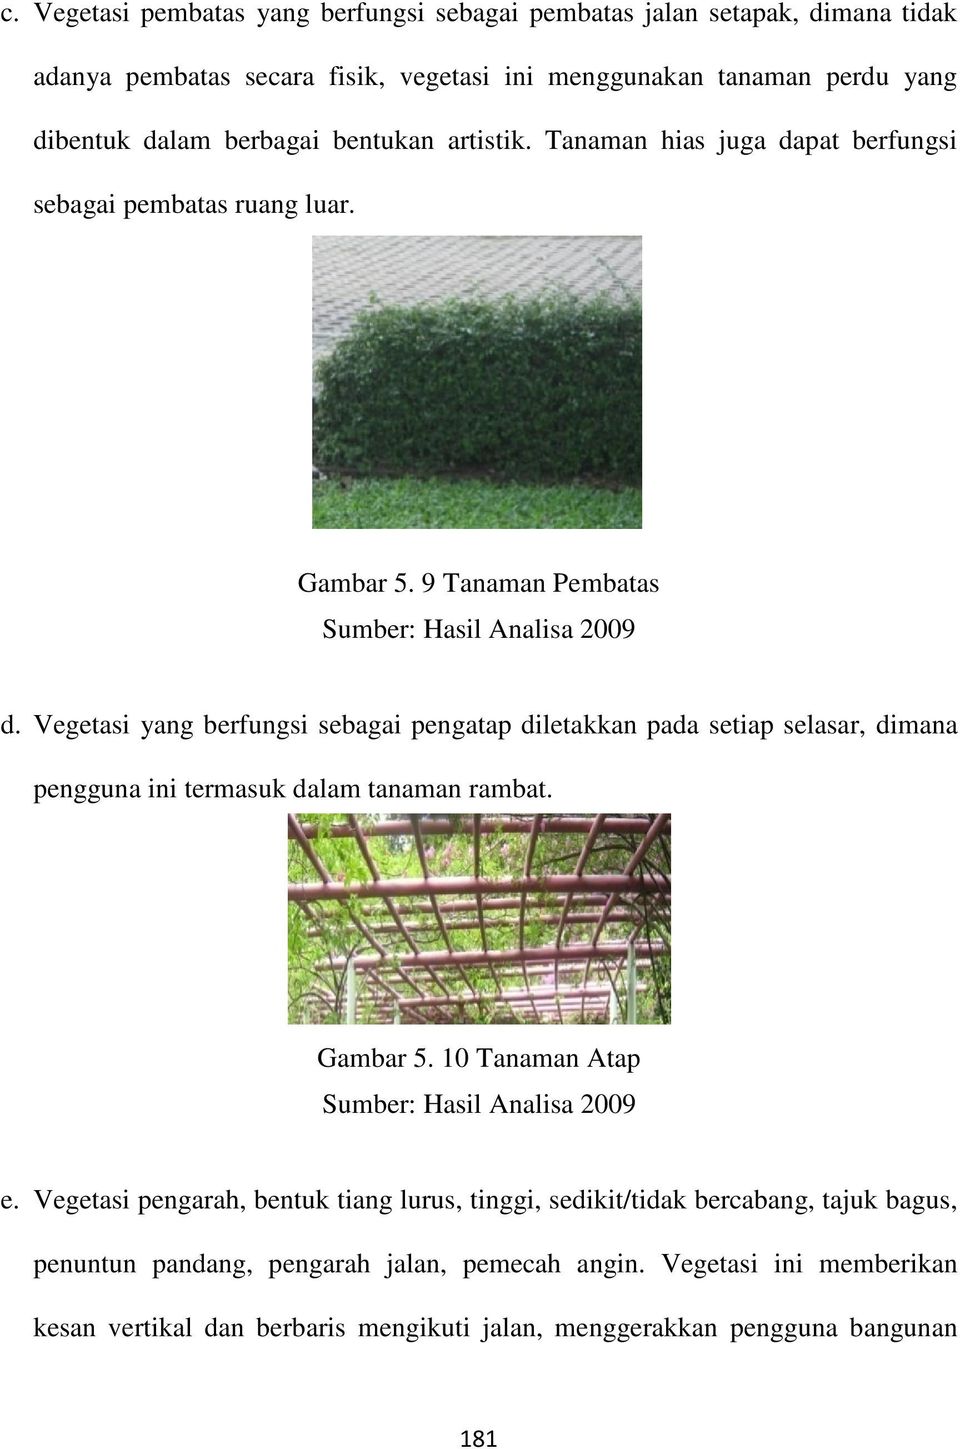 Vegetasi yang berfungsi sebagai pengatap diletakkan pada setiap selasar, dimana pengguna ini termasuk dalam tanaman rambat. Gambar 5. 10 Tanaman Atap e.